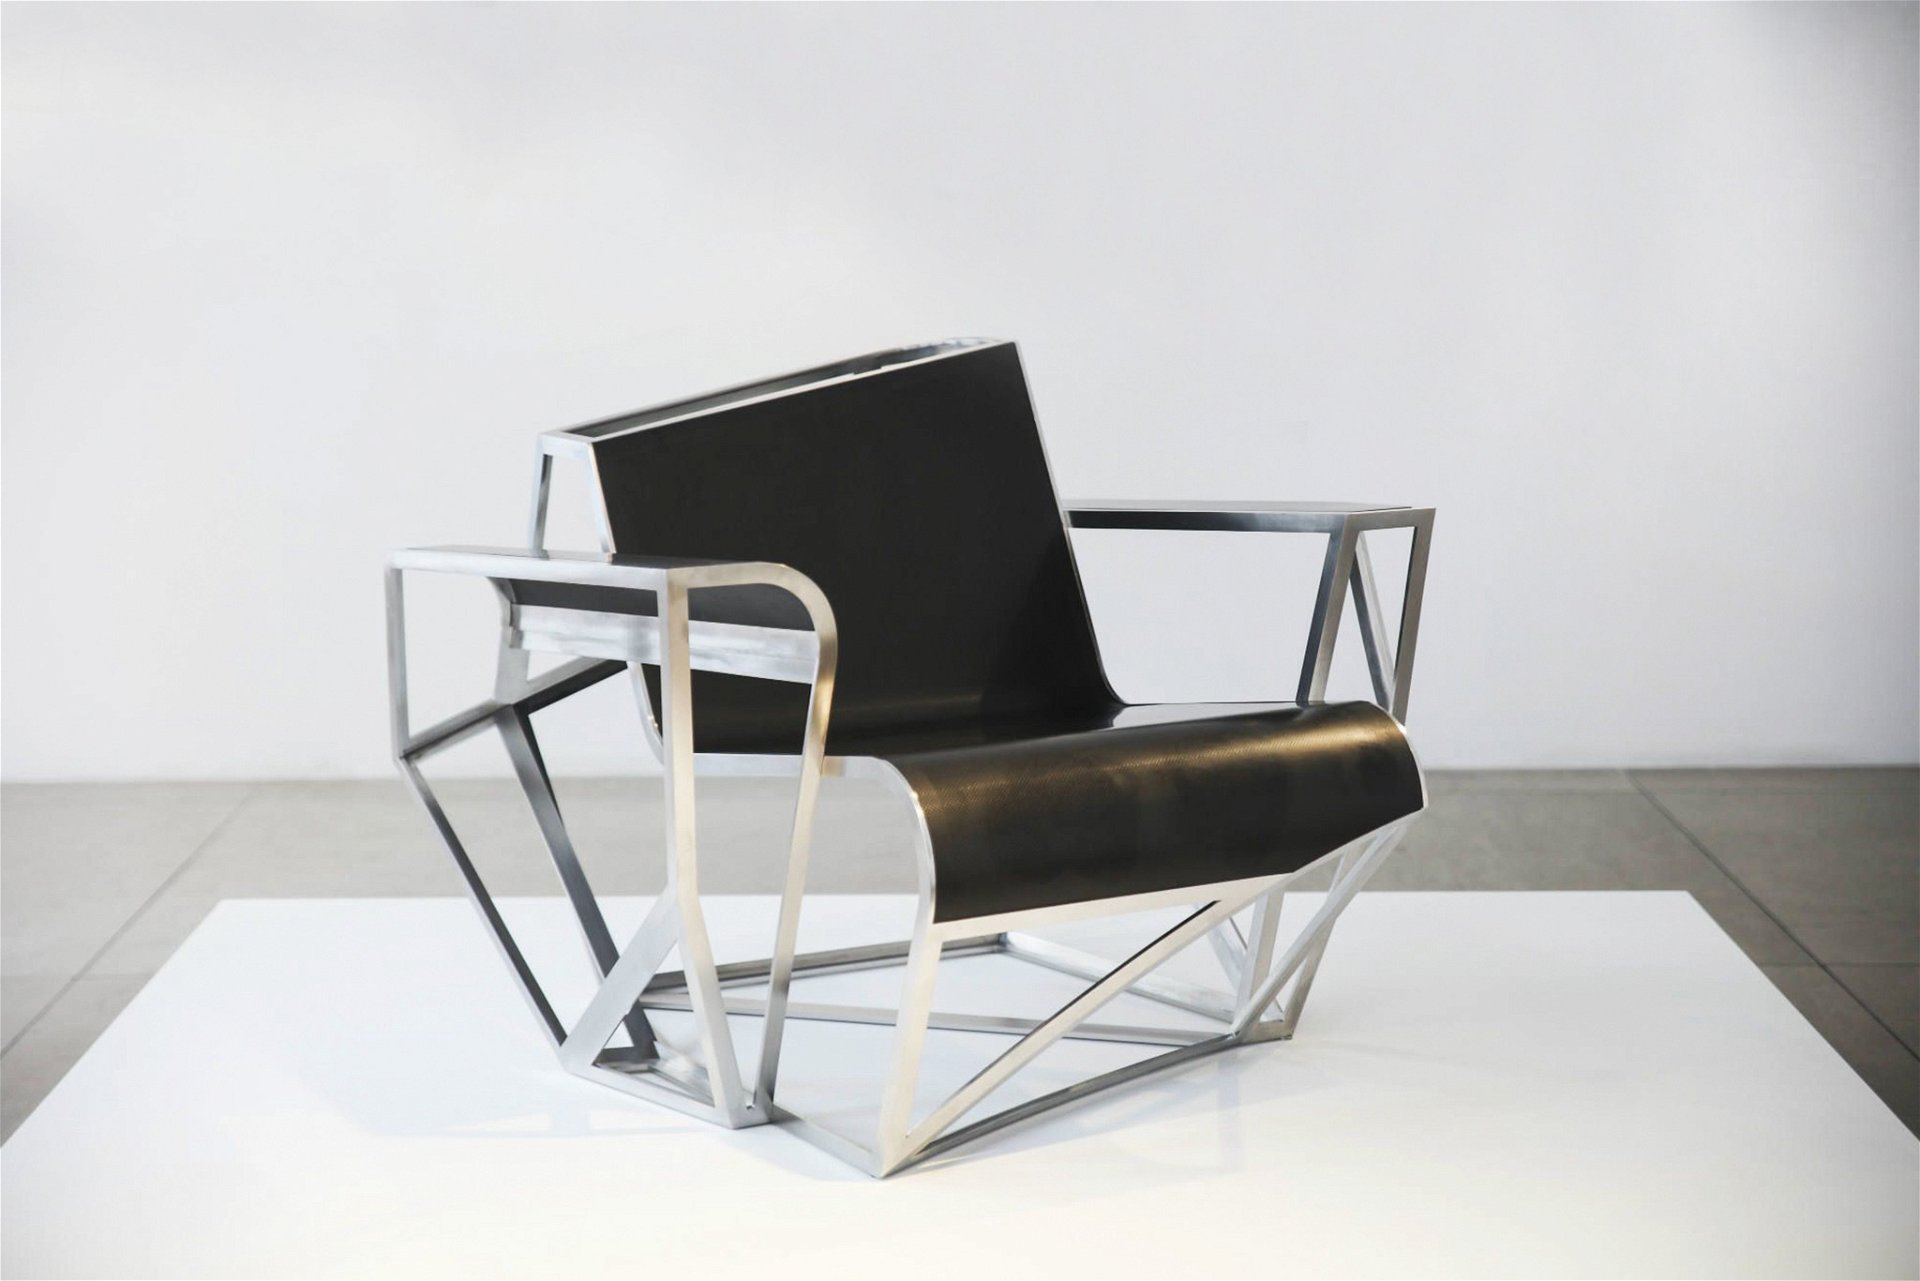 Über die Galerie David Gill: Sessel »Skytrap«von Architekt Daniel Libeskind. davidgillgallery.com